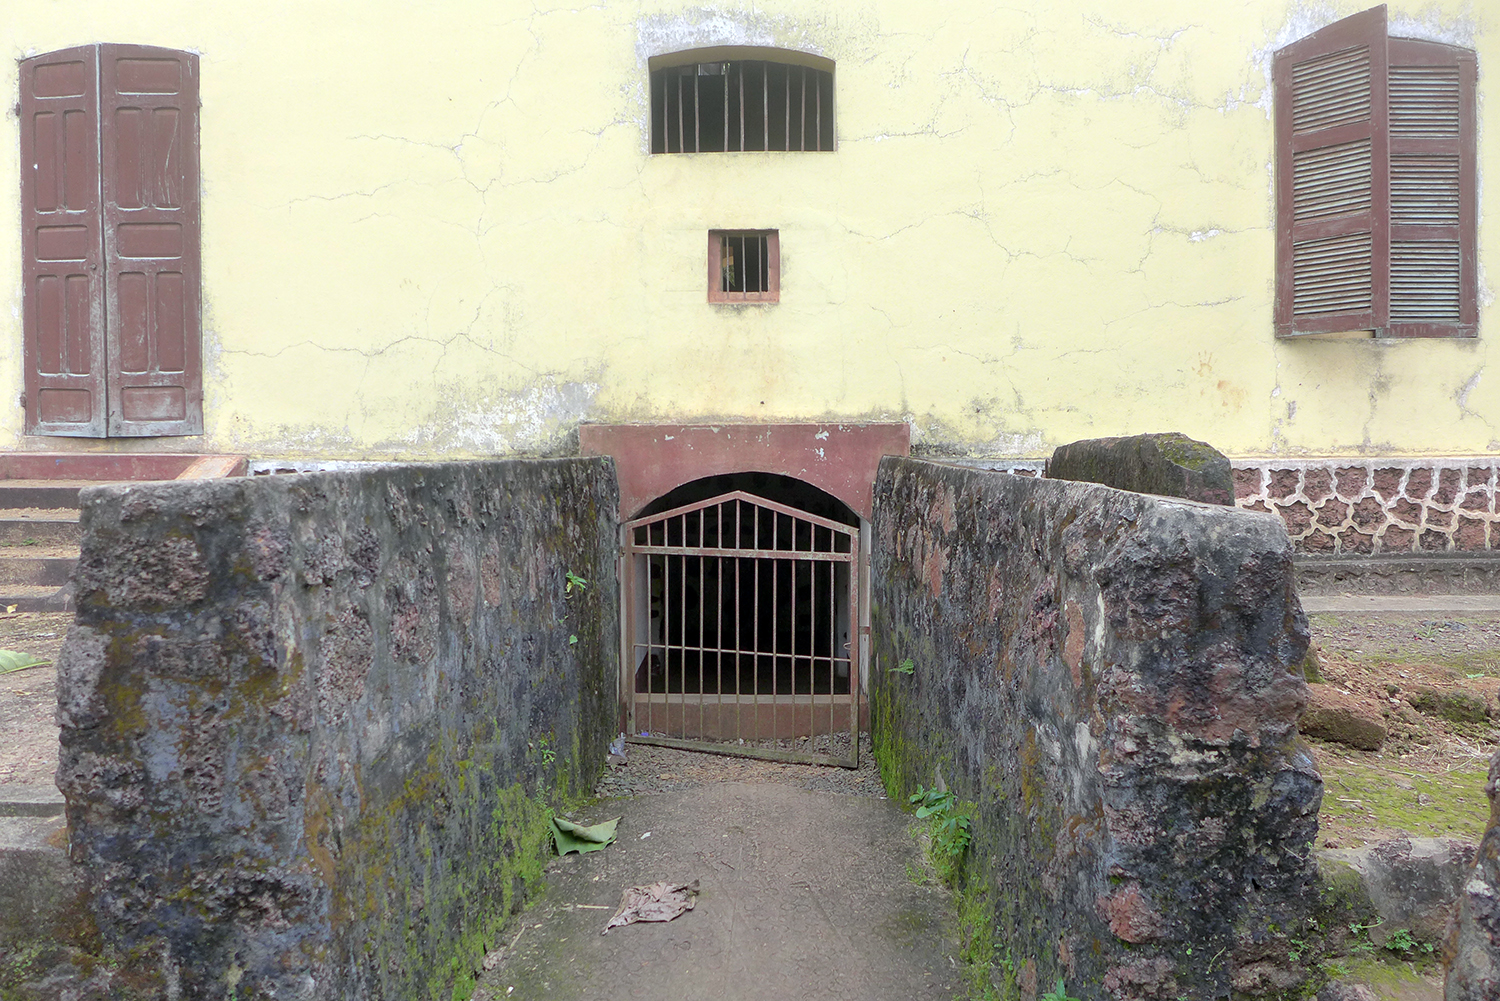 L’entrée de la cave où étaient cachés les esclaves avant leur départ pour l’Amérique après l’abolition de la traite négrière.